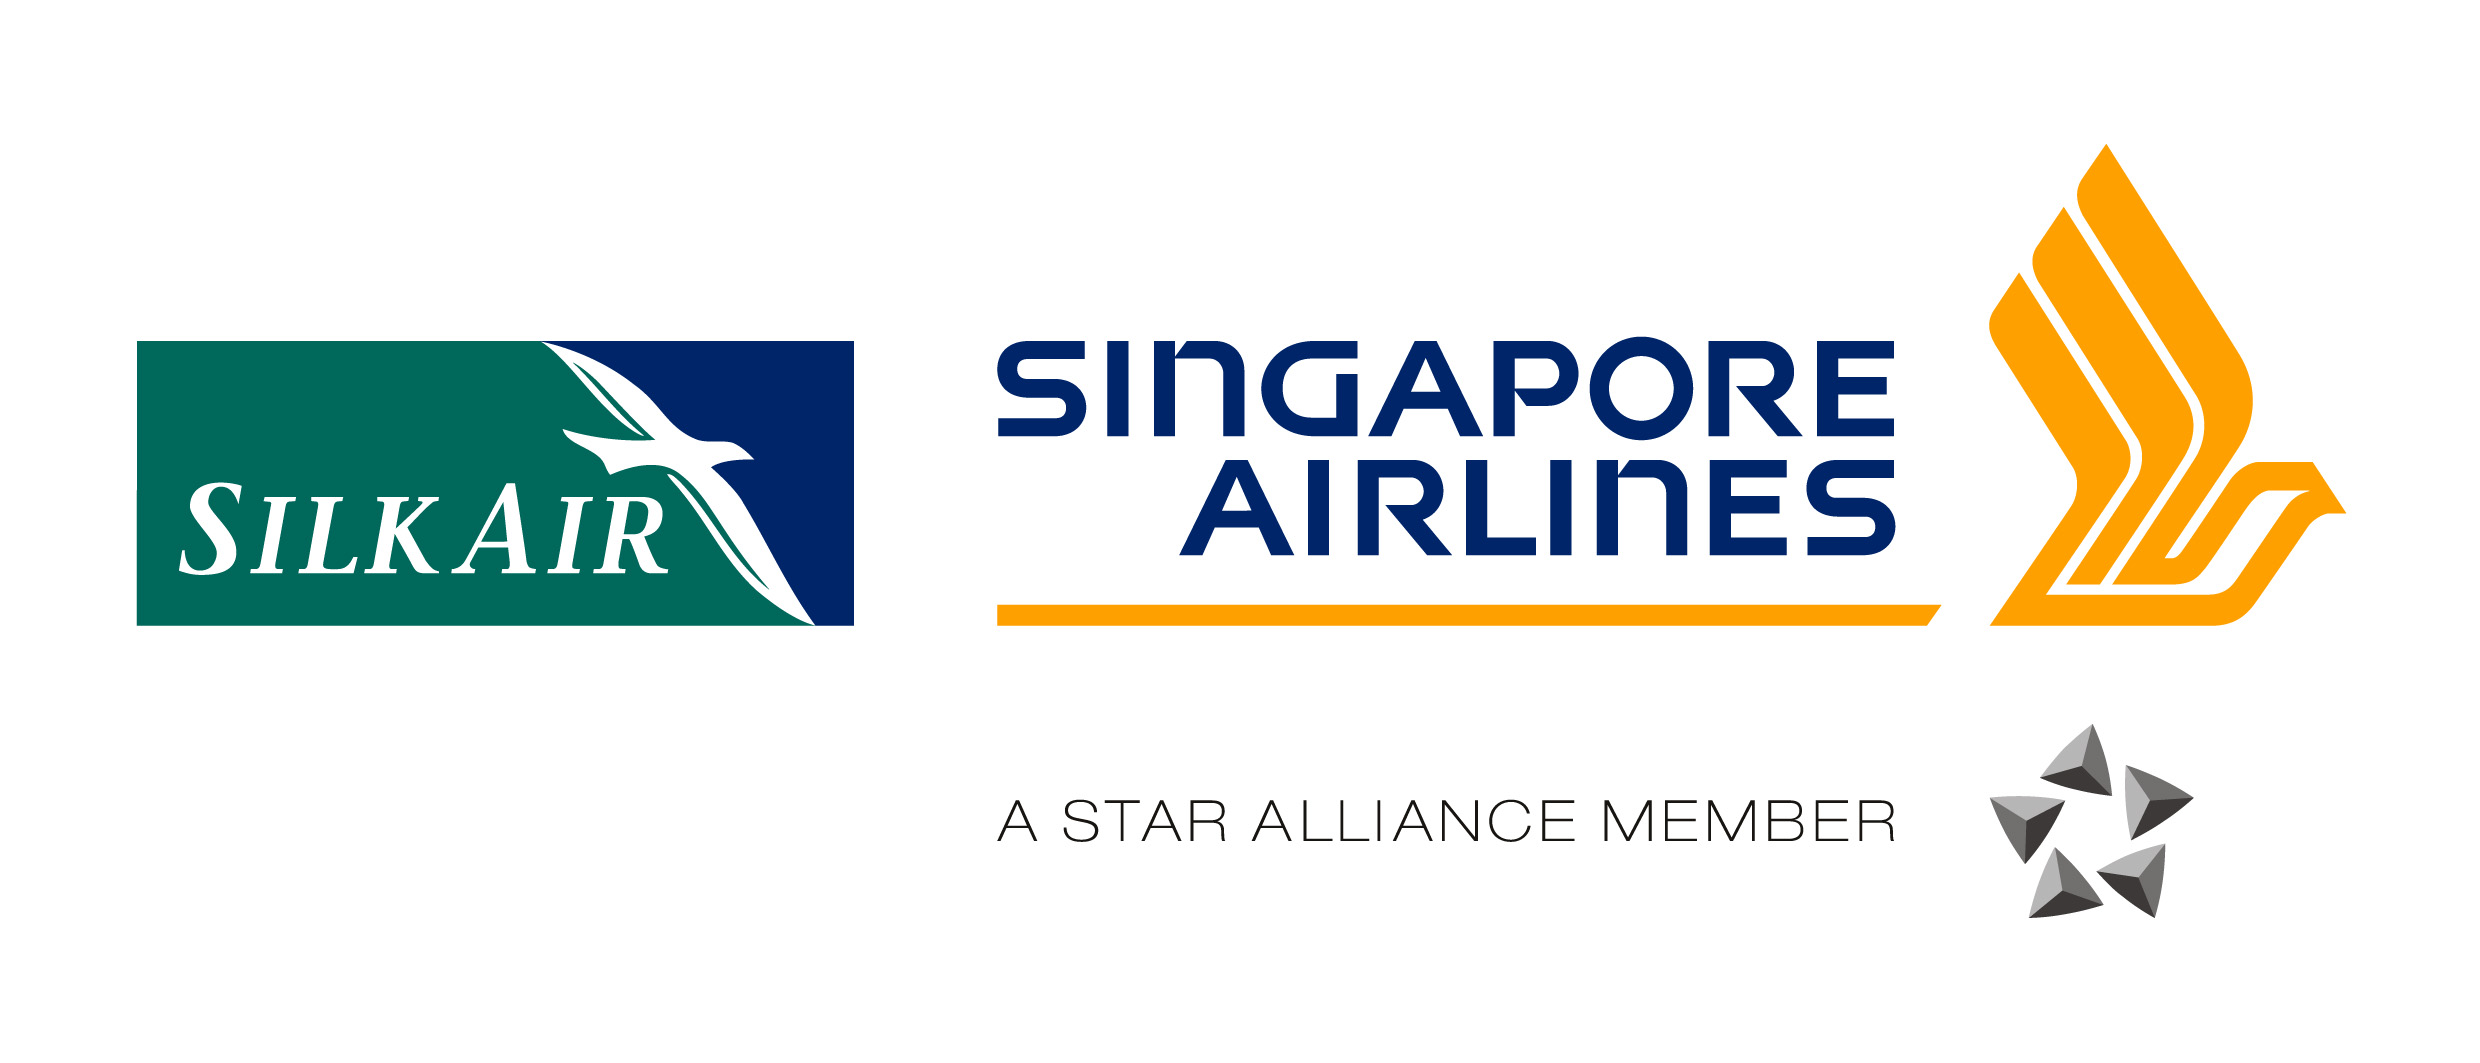 Singapore Airlines và SilkAir thông báo chuyển host